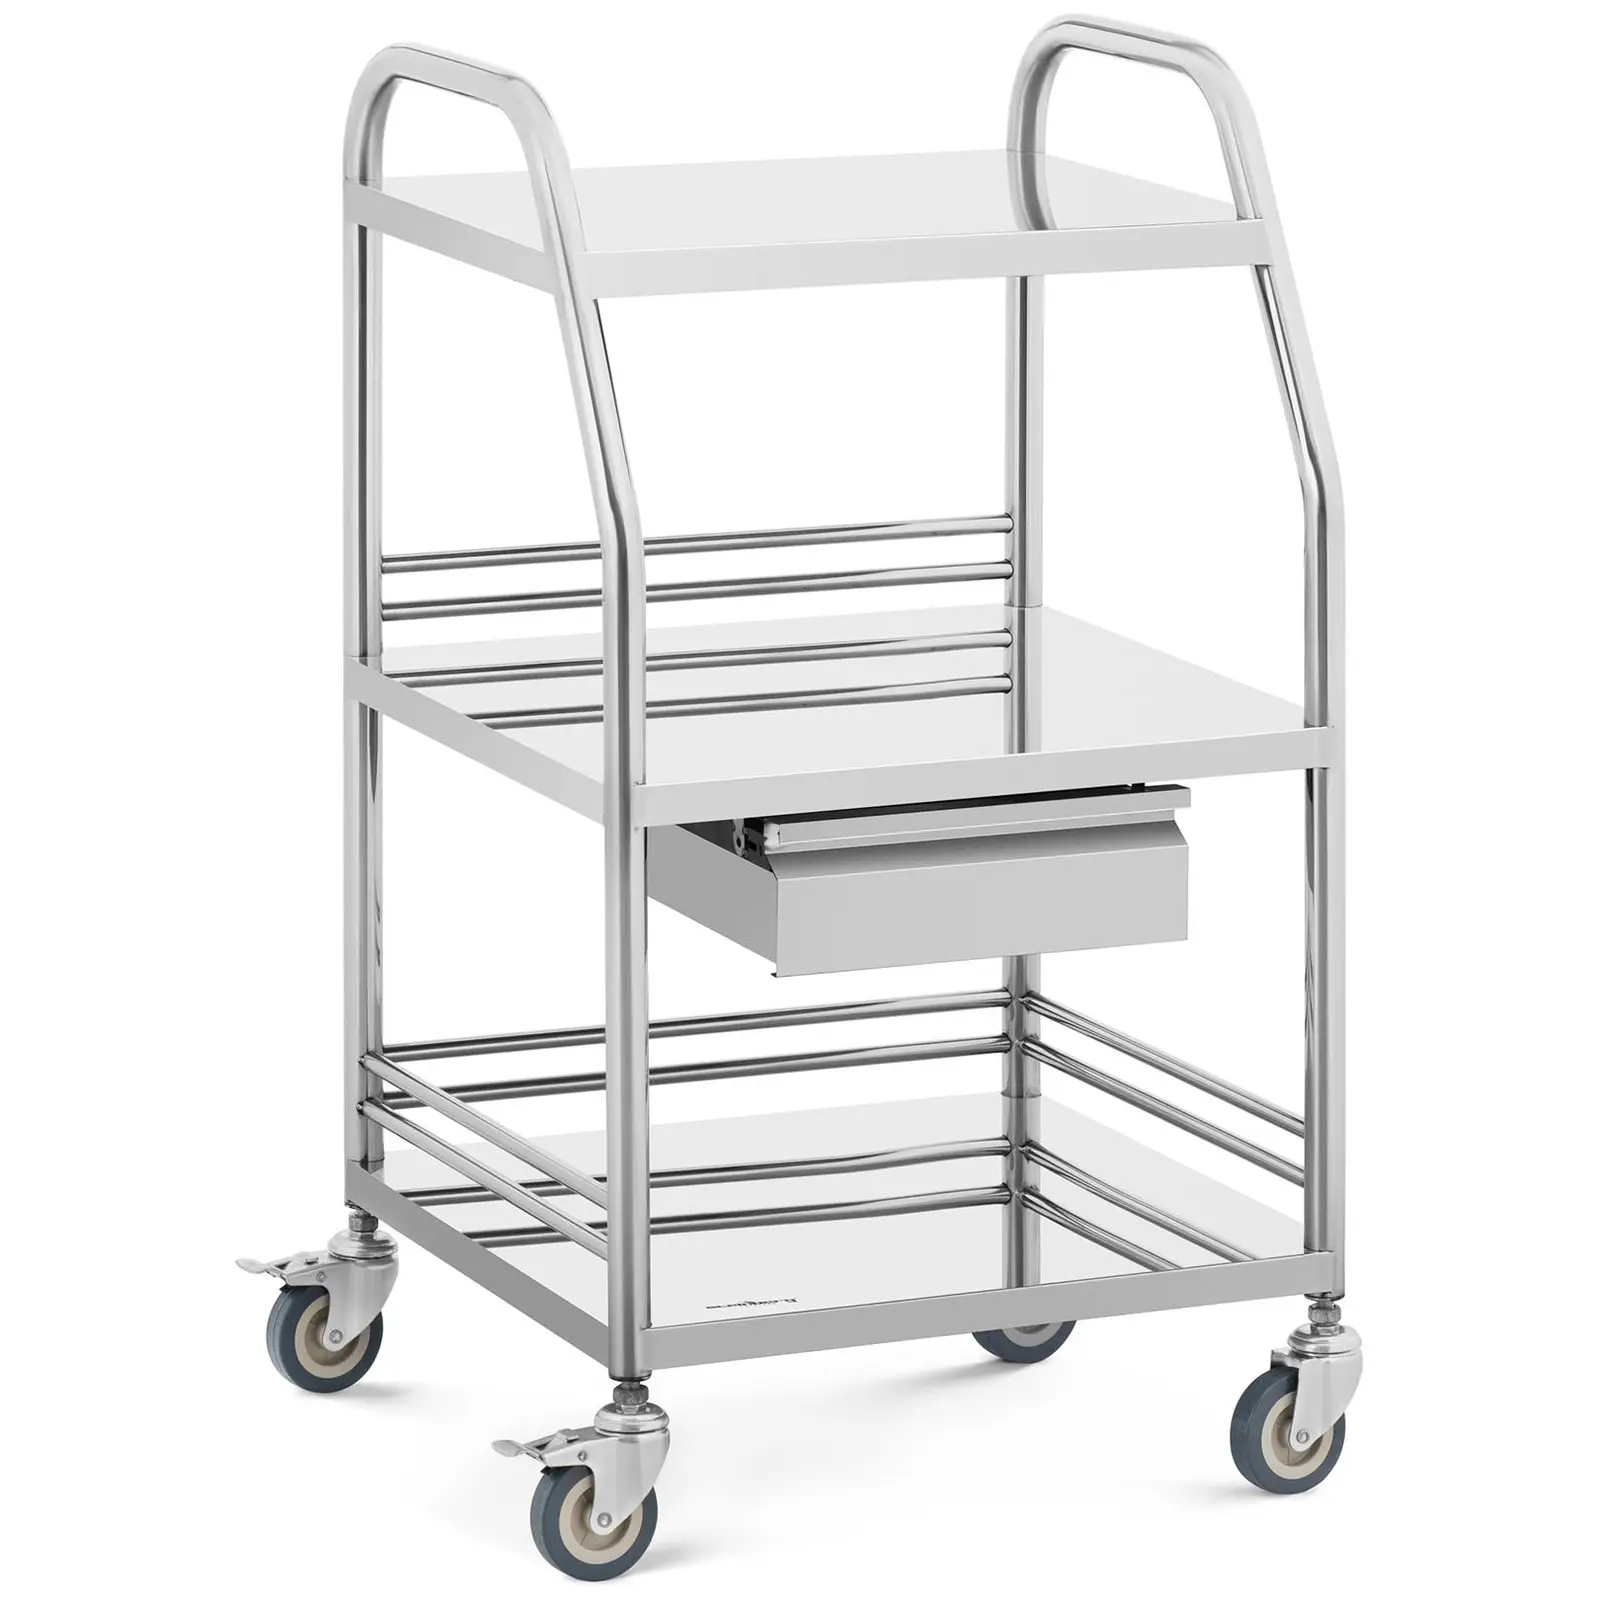 Laboratorijski voziček - nerjaveče jeklo - 3 police vsaka 41 x 35 x 2,5 cm - 1 predal - 30 kg